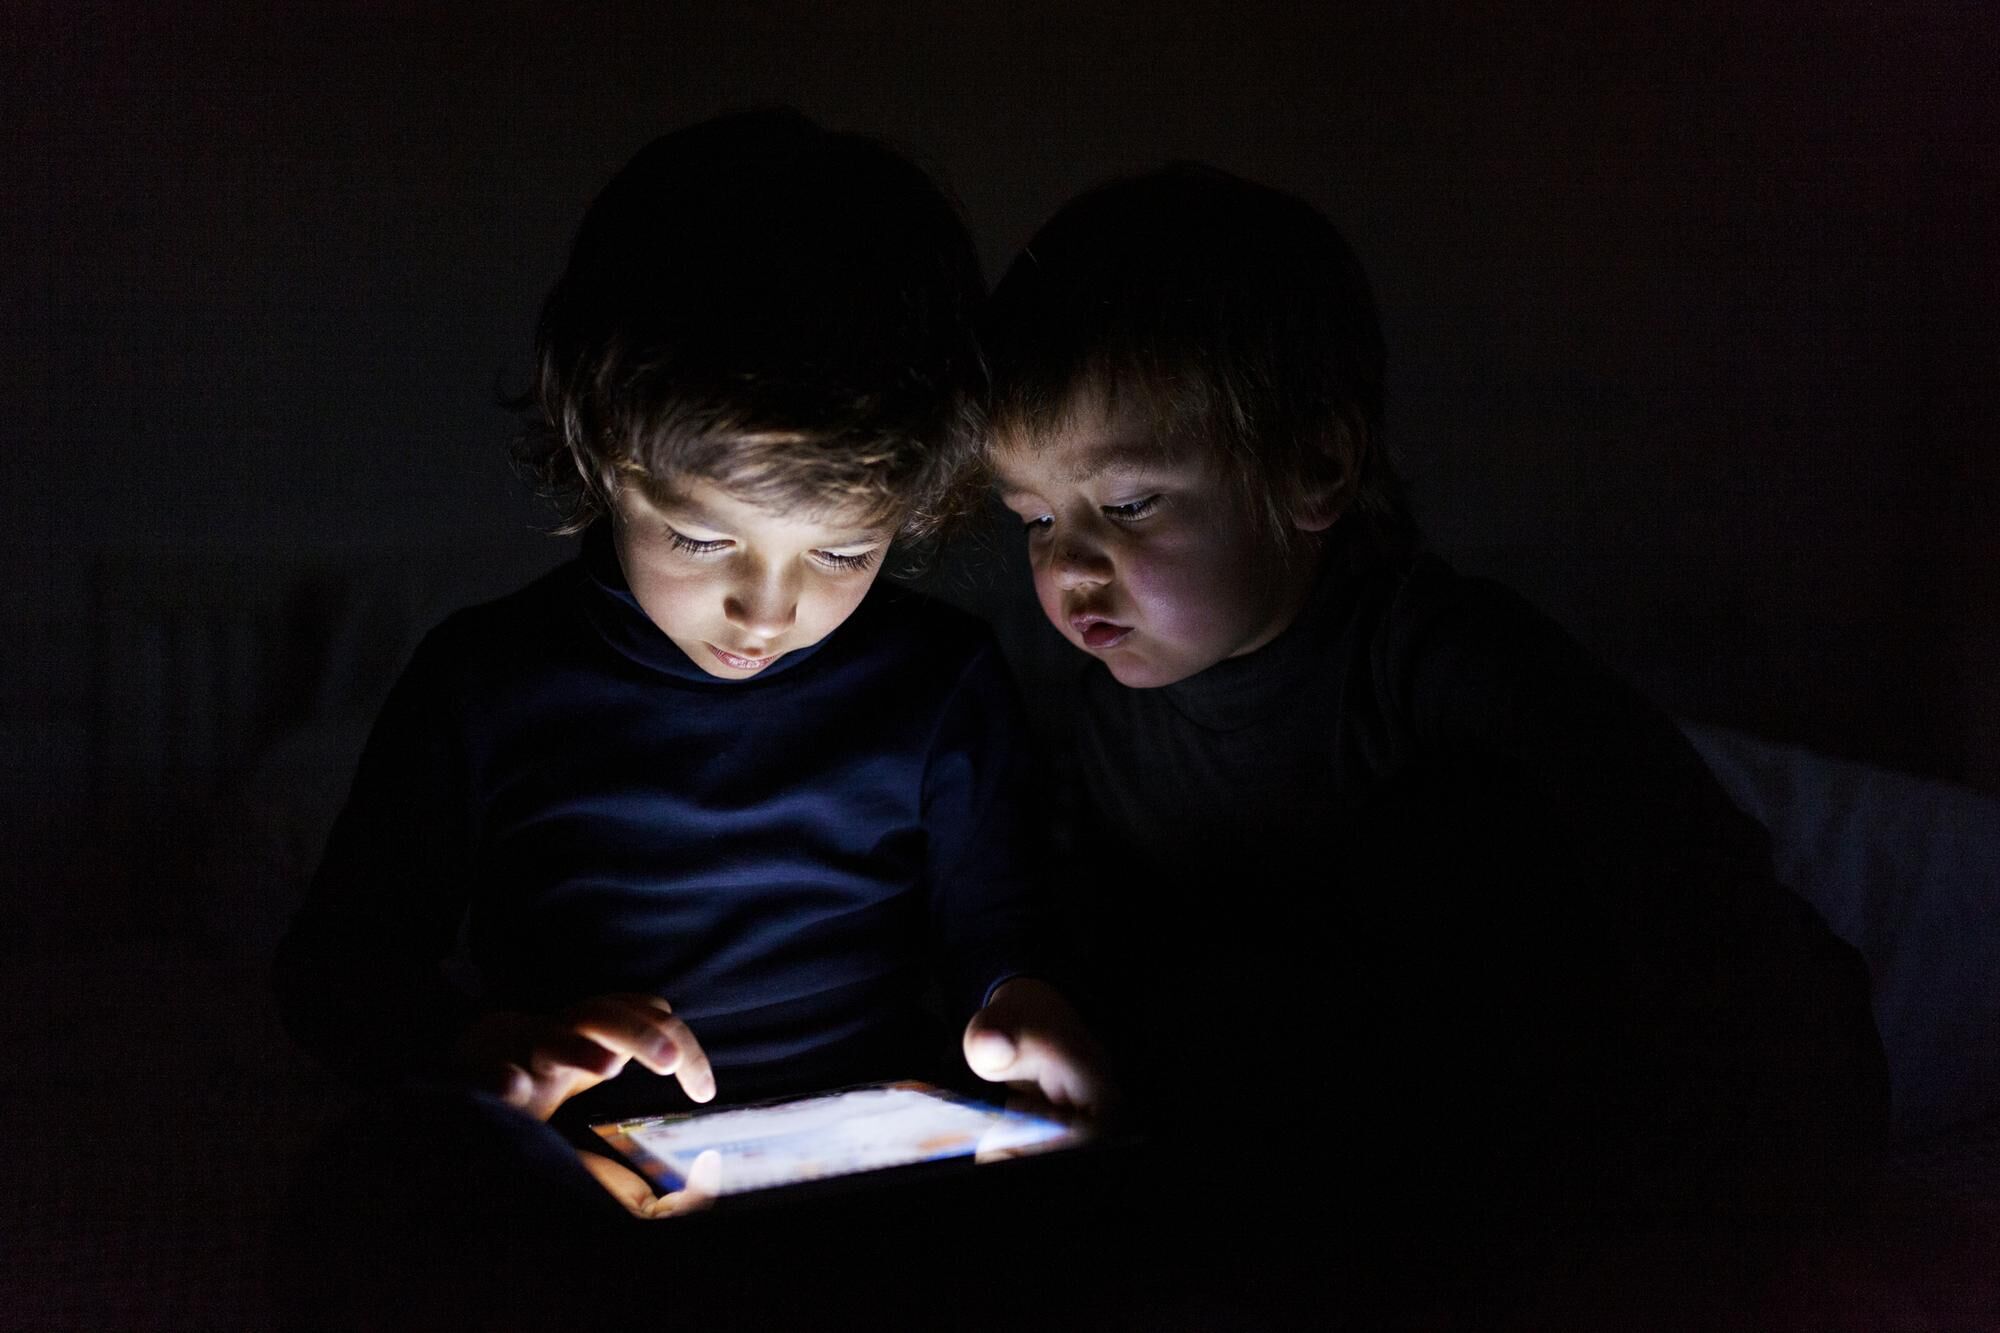 Les écrans rendent-ils vraiment les enfants autistes? – L'Express